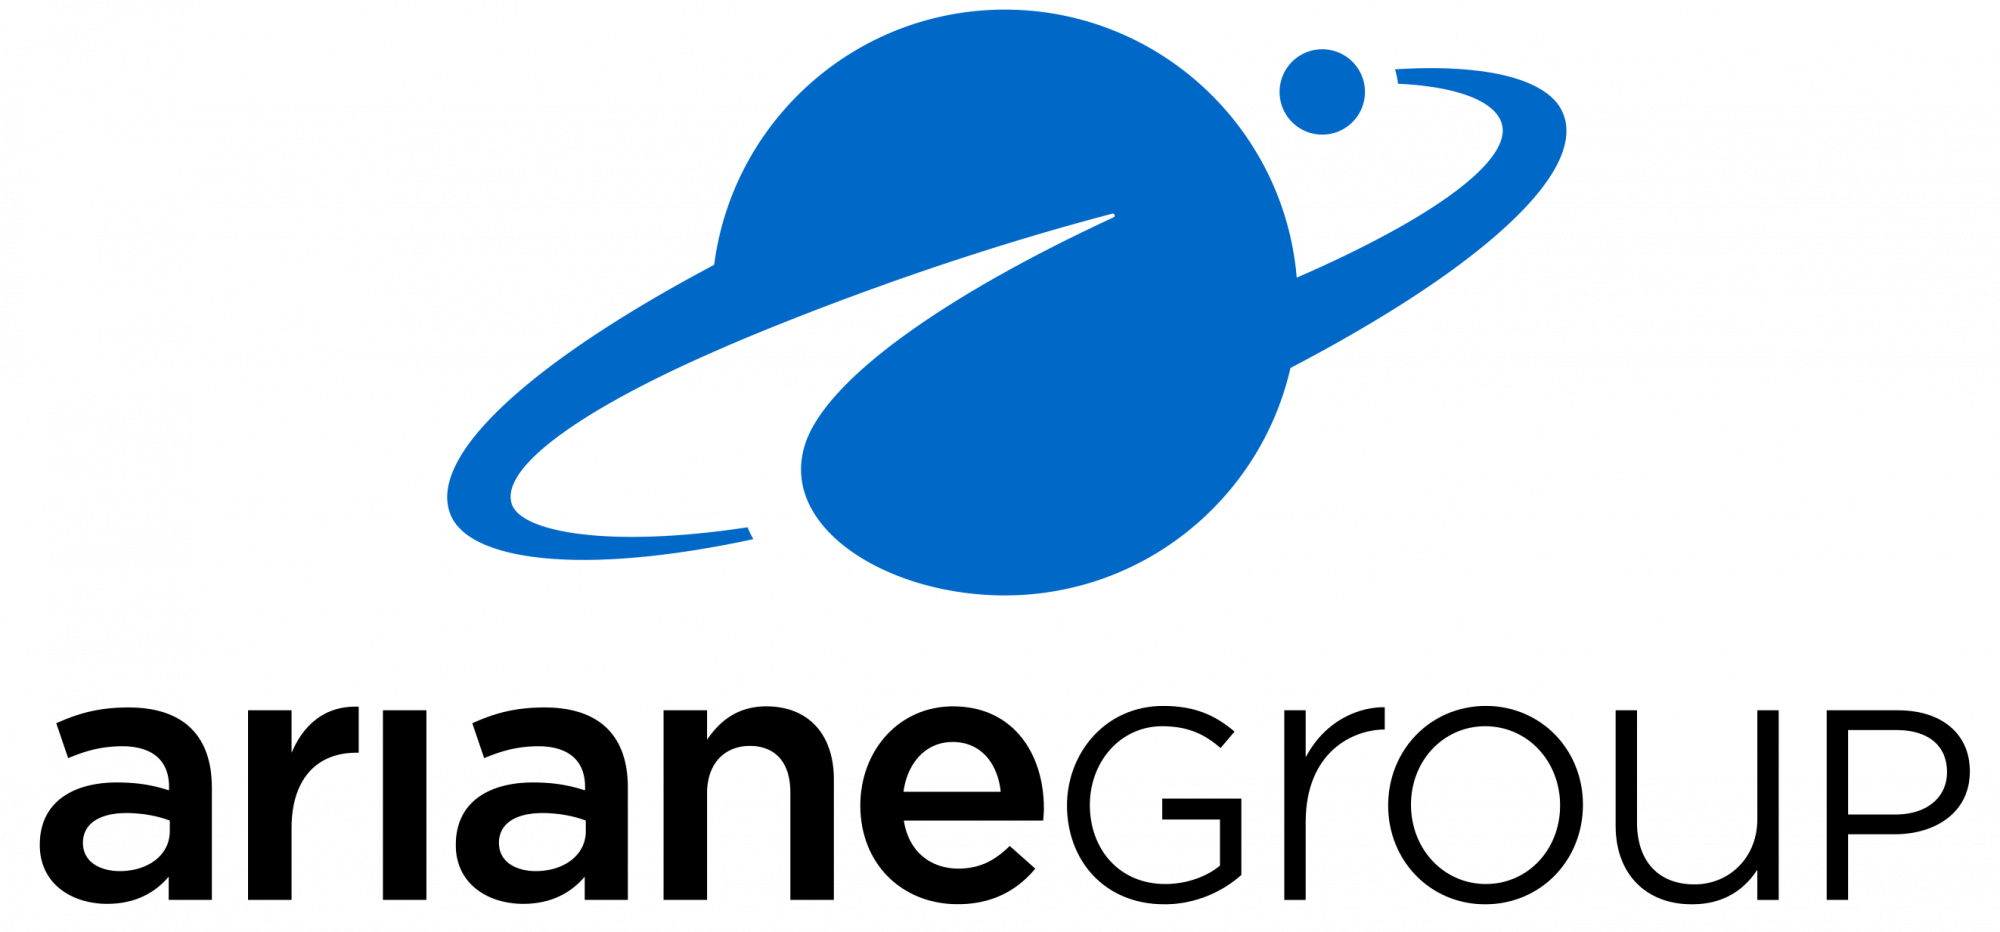 Le site institutionnel d'ArianeGroup, leader européen de lanceurs spatiaux. Notre mission : un accès Européen à l'espace grâce à nos fusées Ariane 5 et Ariane 6